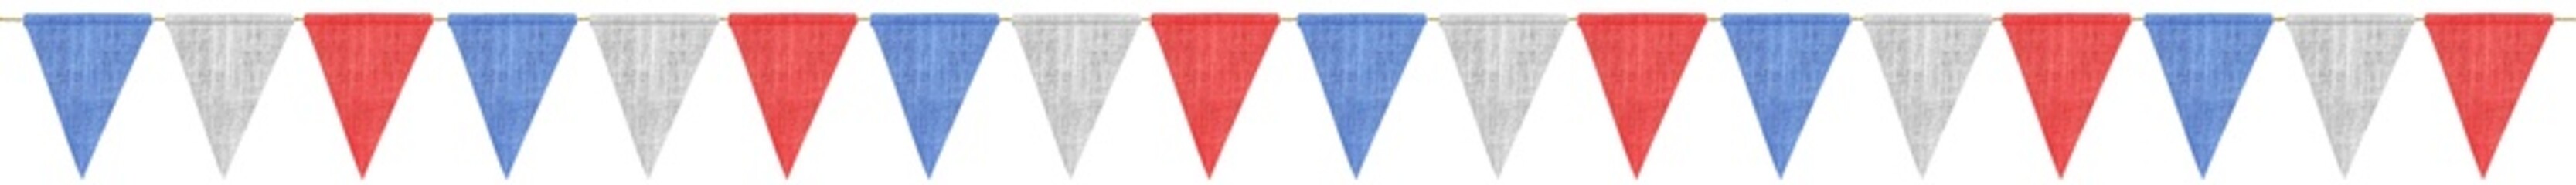 Guirlande de drapeaux tricolores, fond blanc 